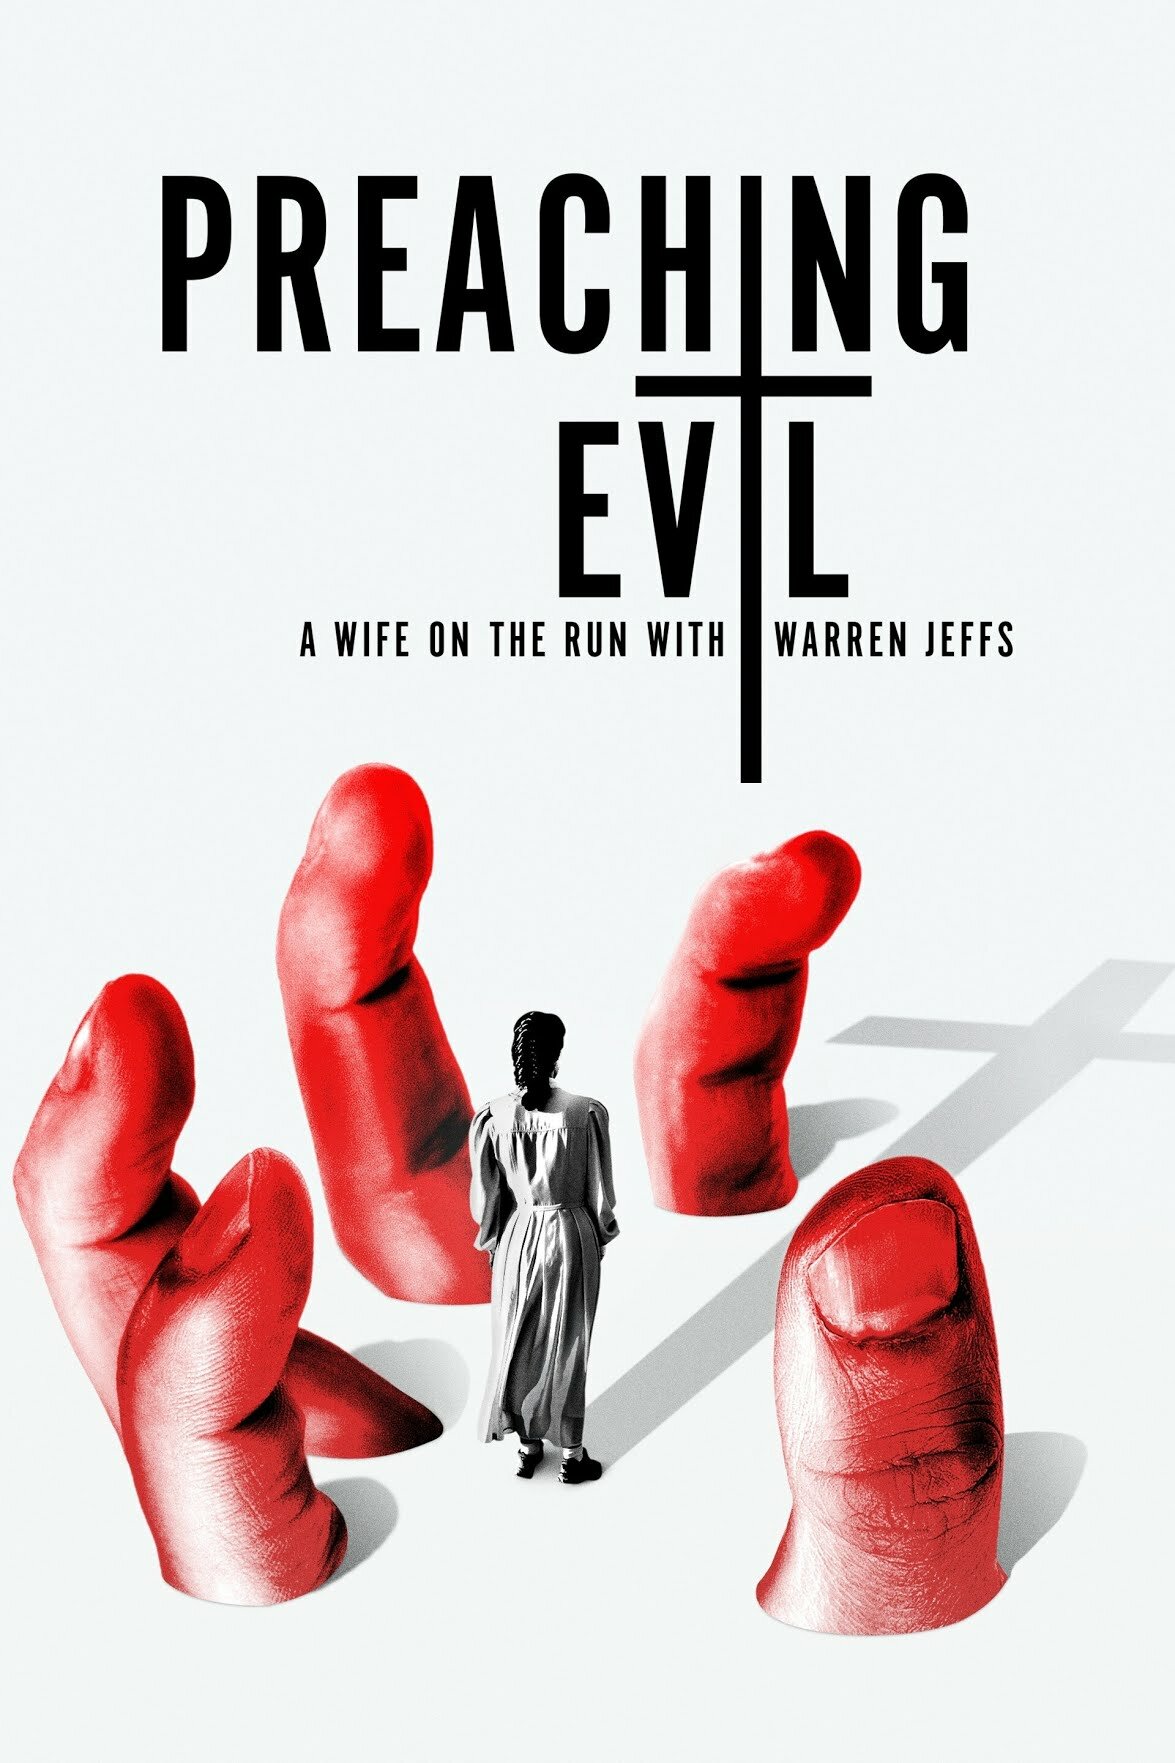 Preaching Evil: A Wife on the Run with Warren Jeffs ne zaman